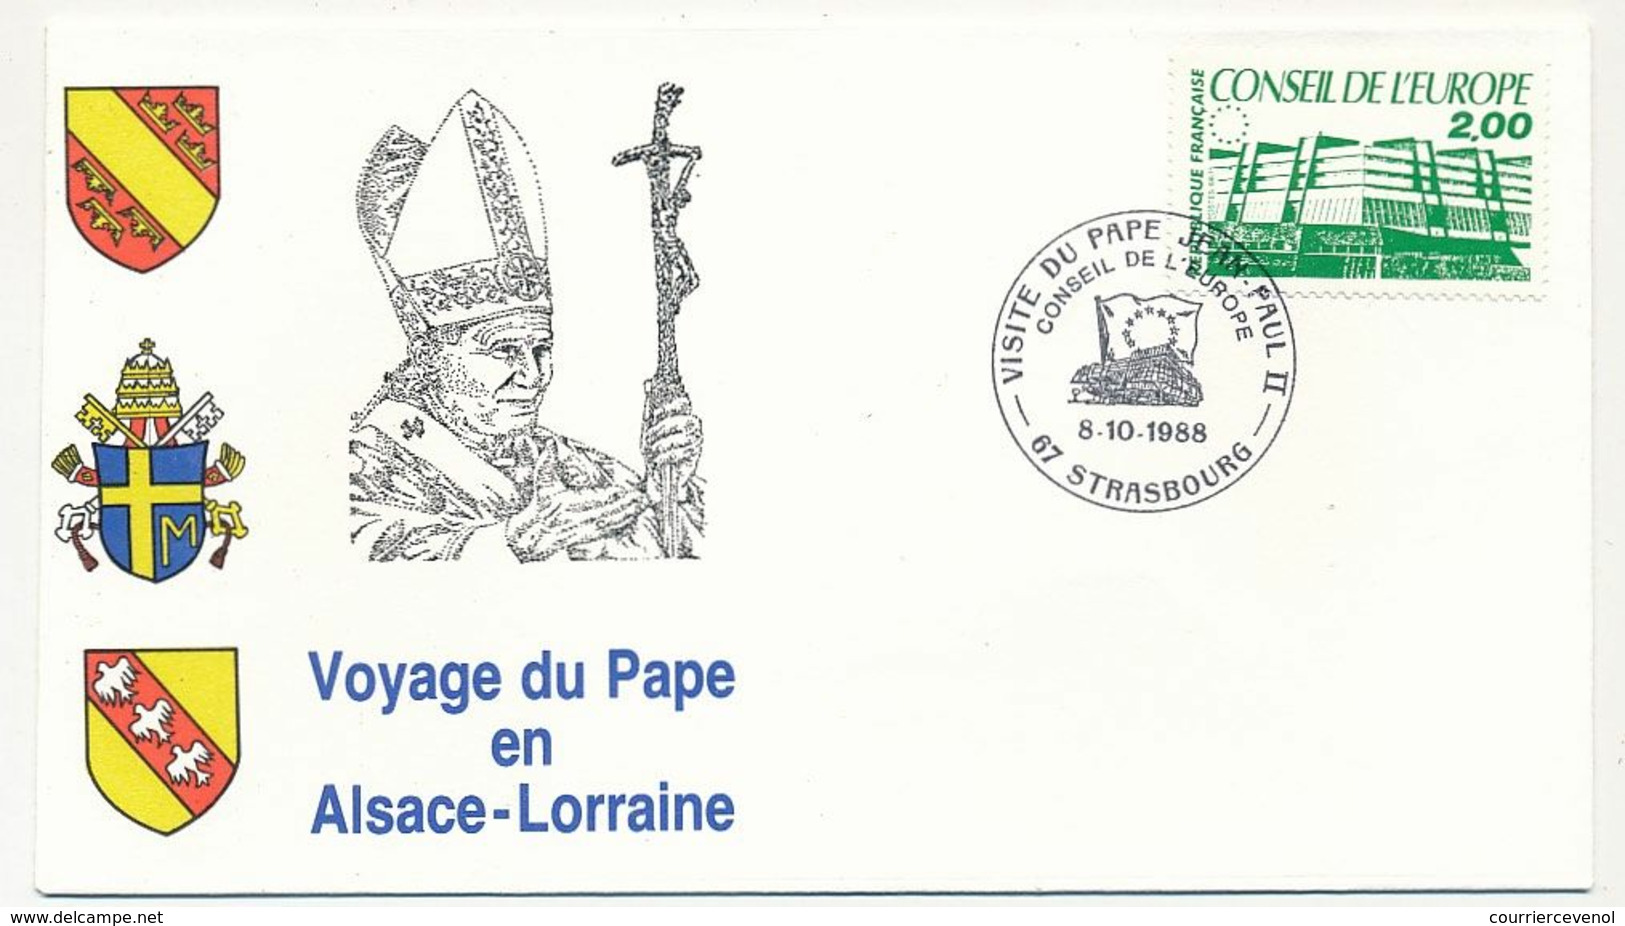 FRANCE - 7 Enveloppes Voyage Du Pape En Alsace Lorraine 1988 + VATICAN - 1 Env Idem - Christianisme